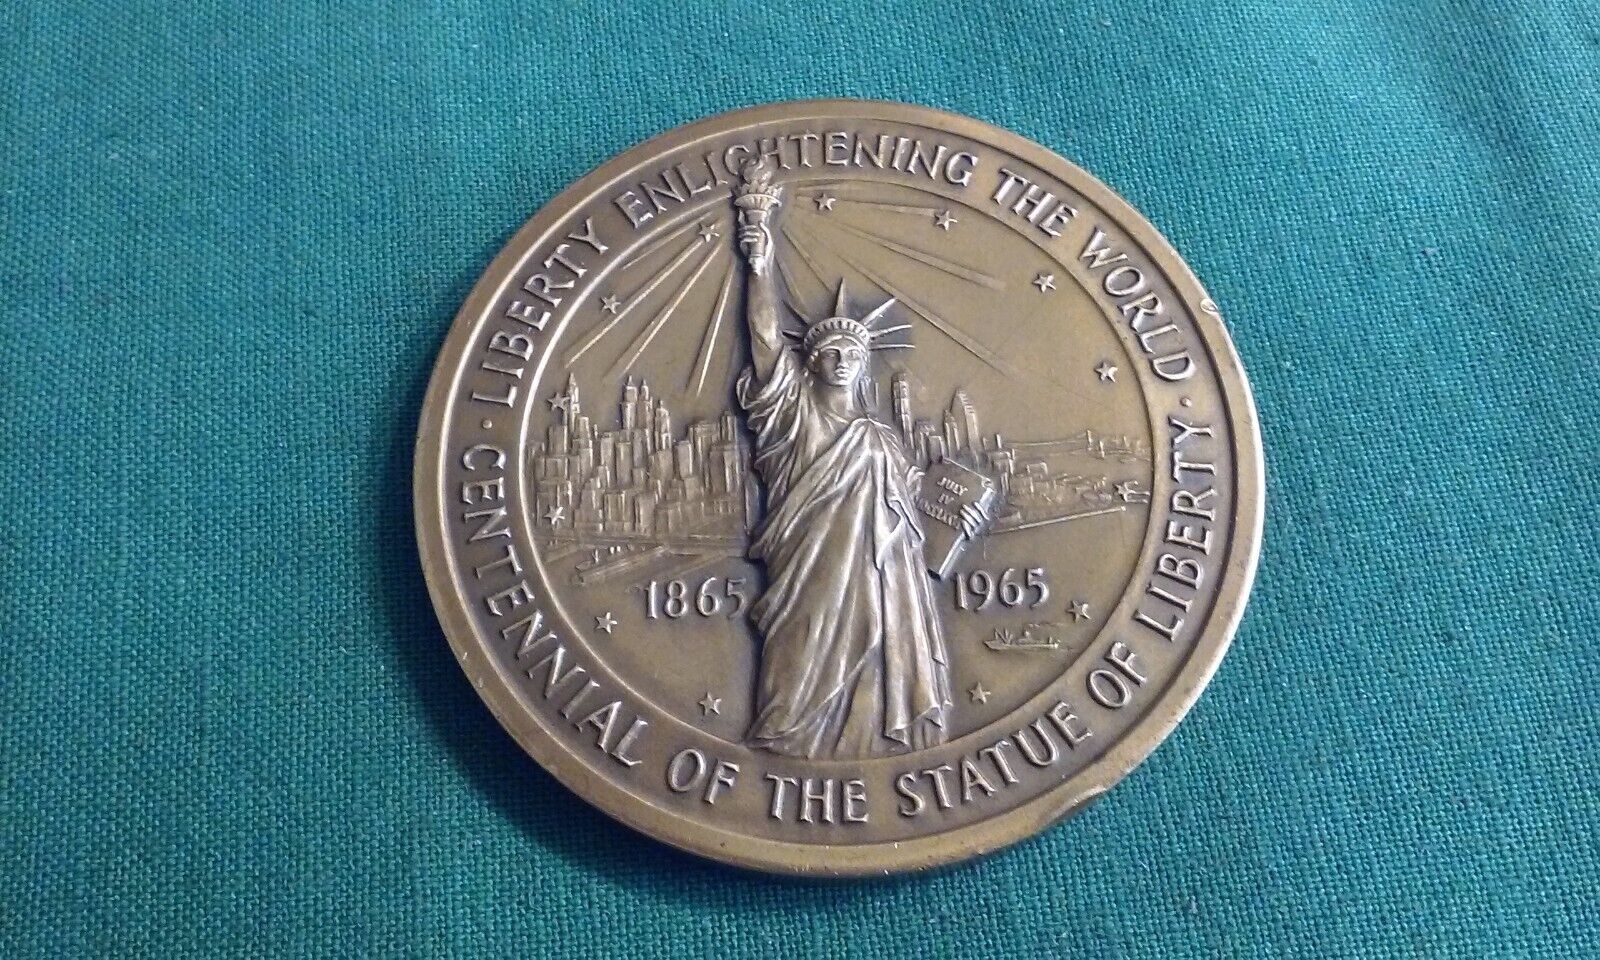 1865-1965 CENTENNIAL STATUE OF LIBERTY Medallic Art Co. New York Bronze Medal